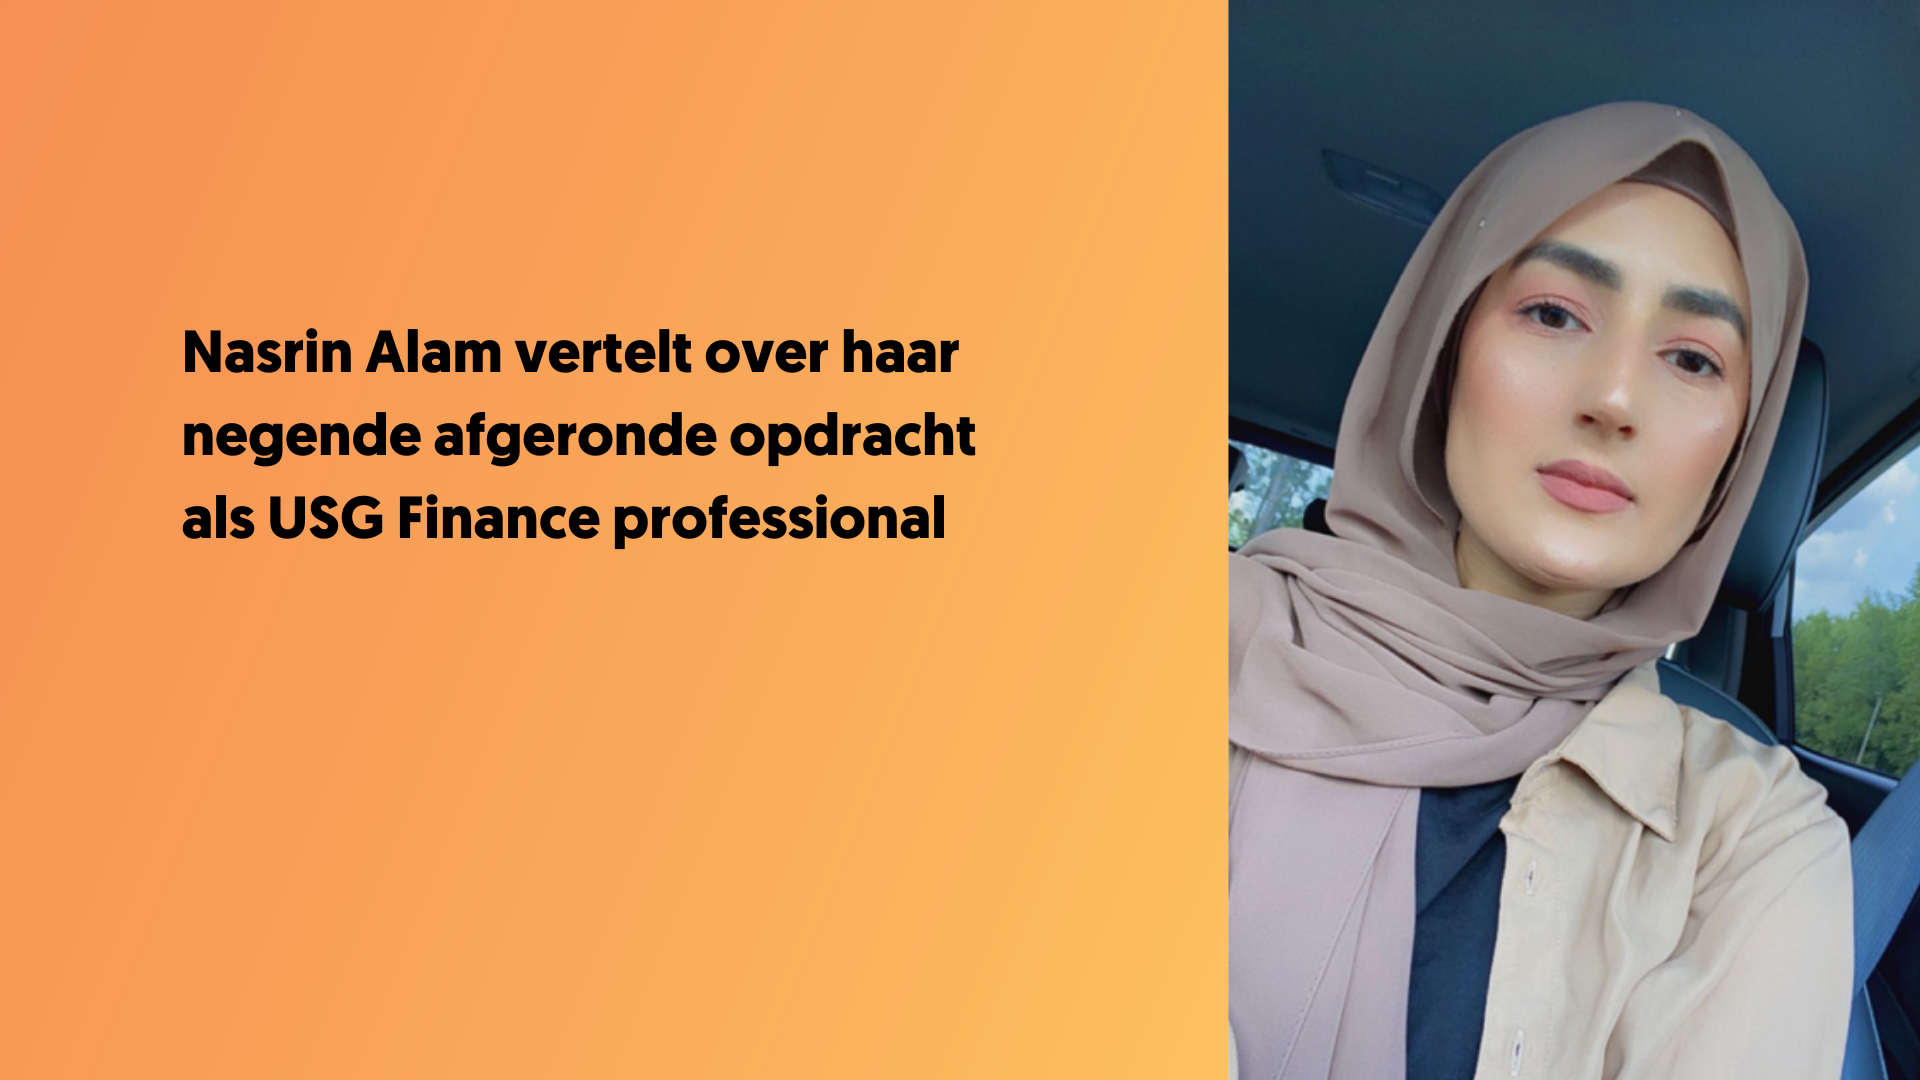 Nasrin Alam over haar recent afgeronde opdracht voor USG Finance